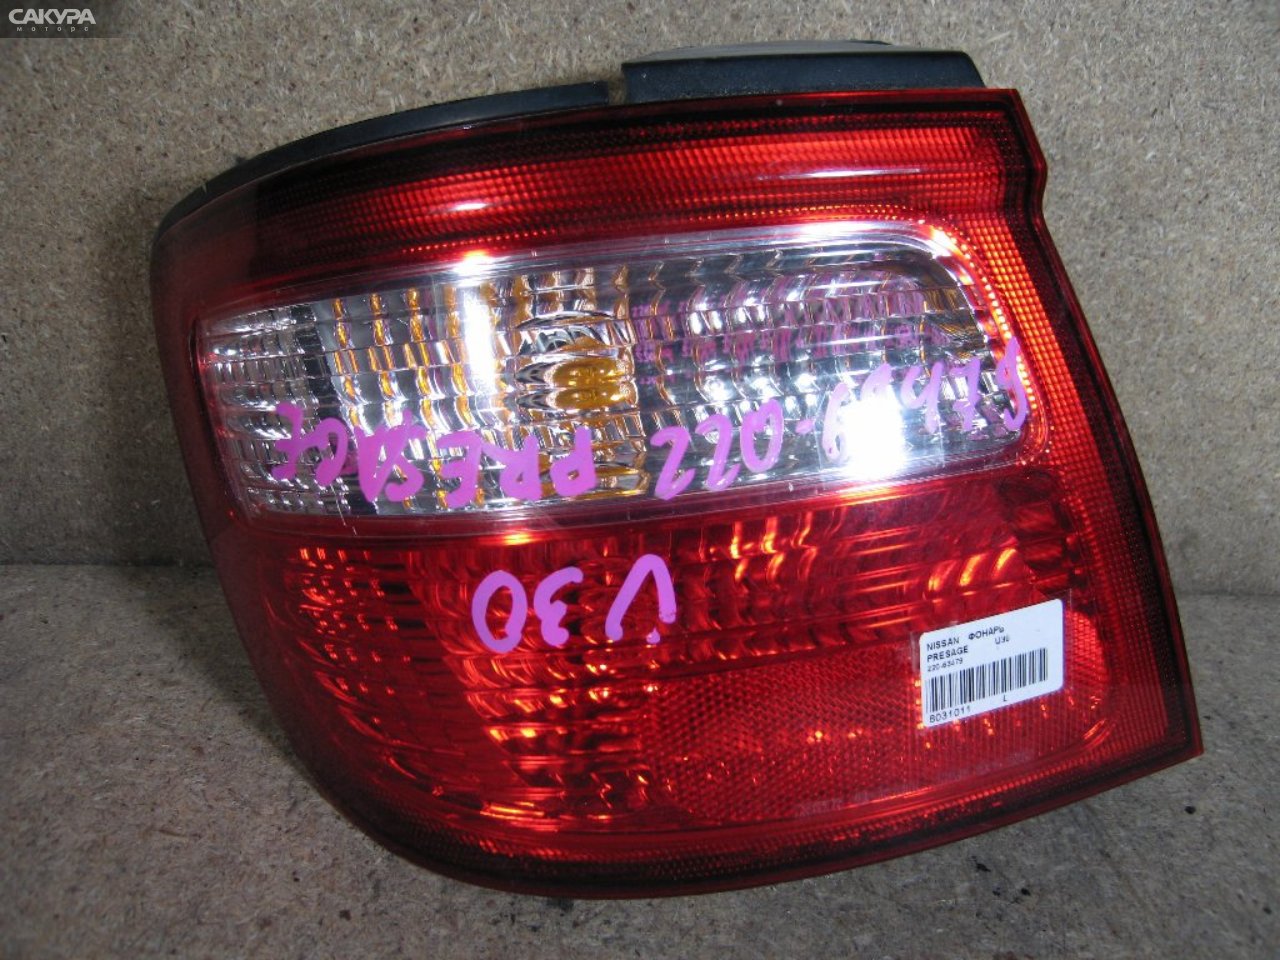 Фонарь стоп-сигнала левый Nissan Presage U30 220-63479: купить в Сакура Абакан.